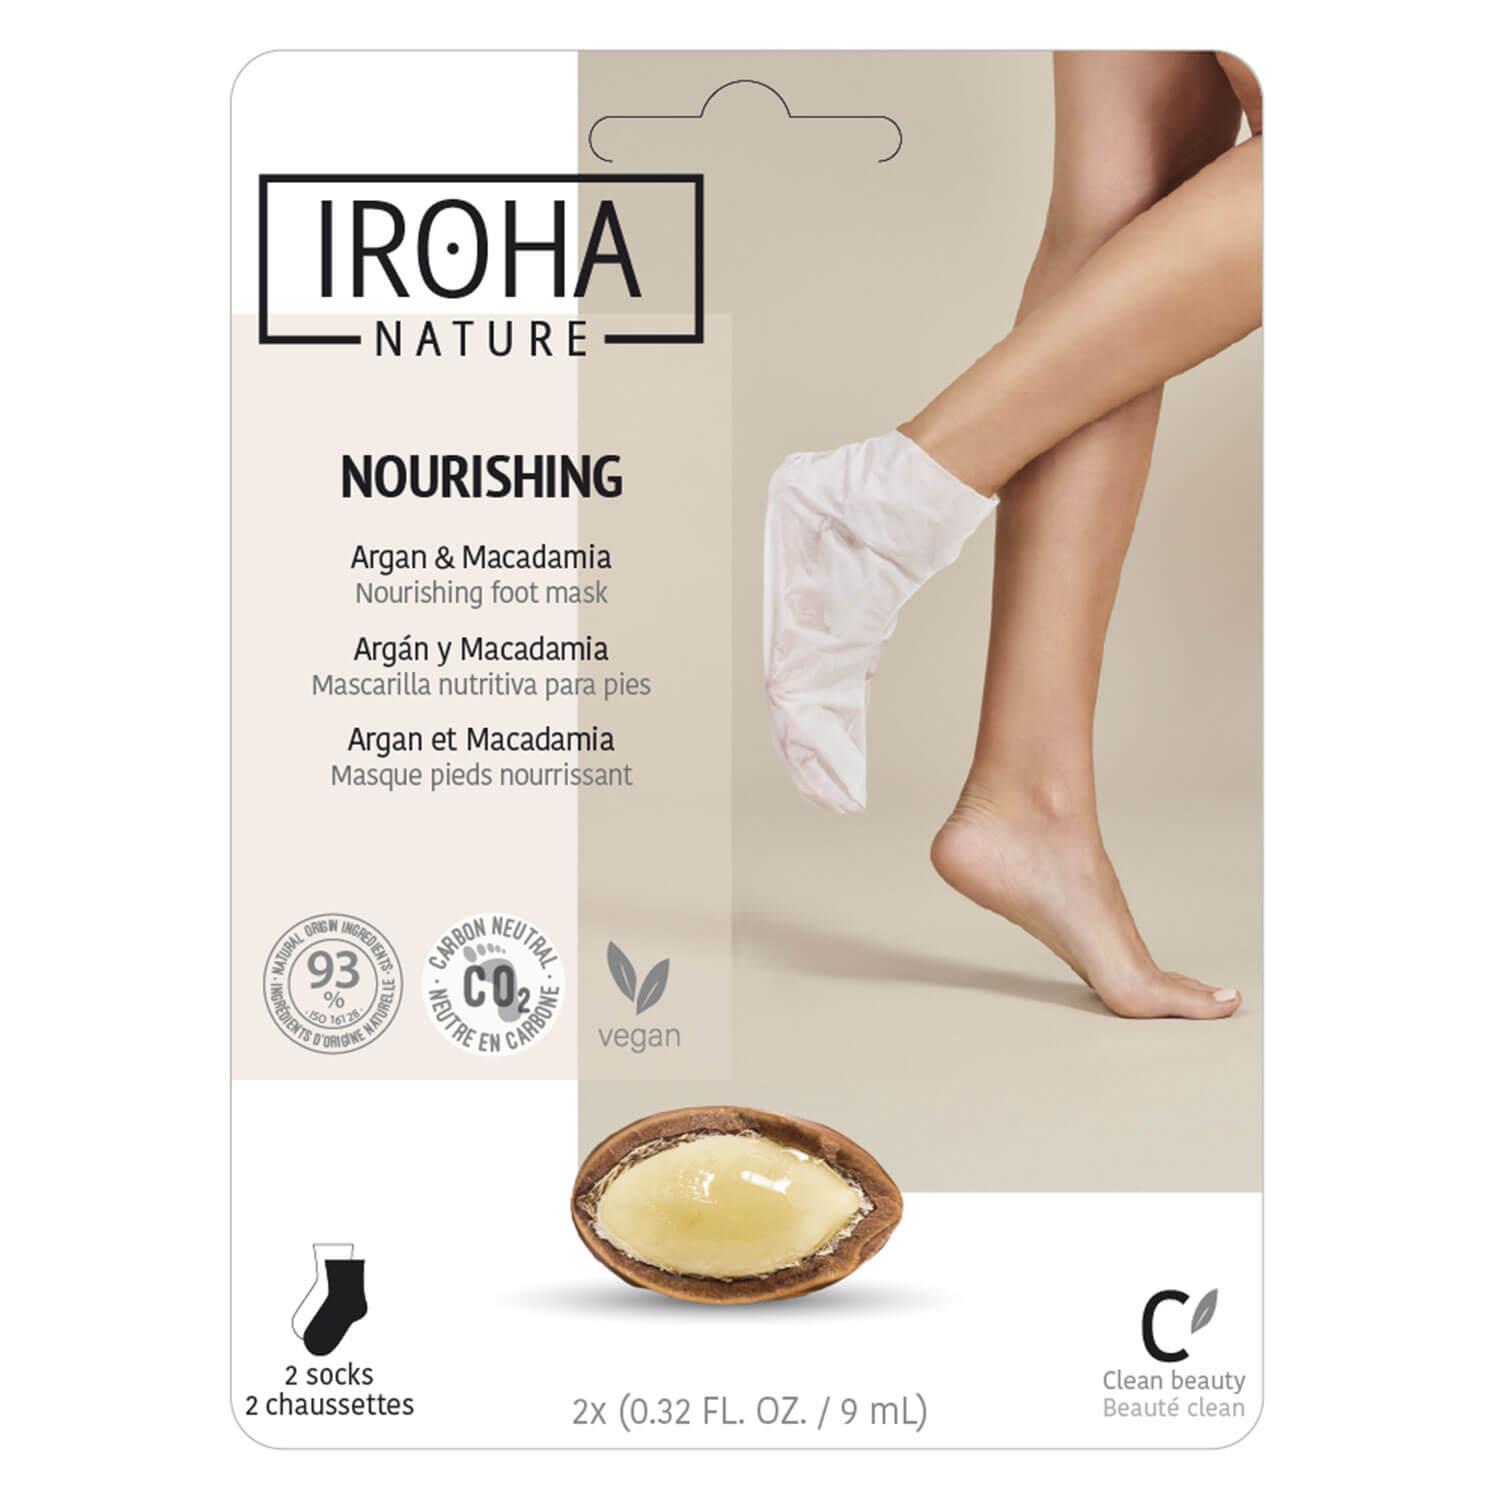 Iroha Nature - Nourishing Argan & Macadamia Foot Mask